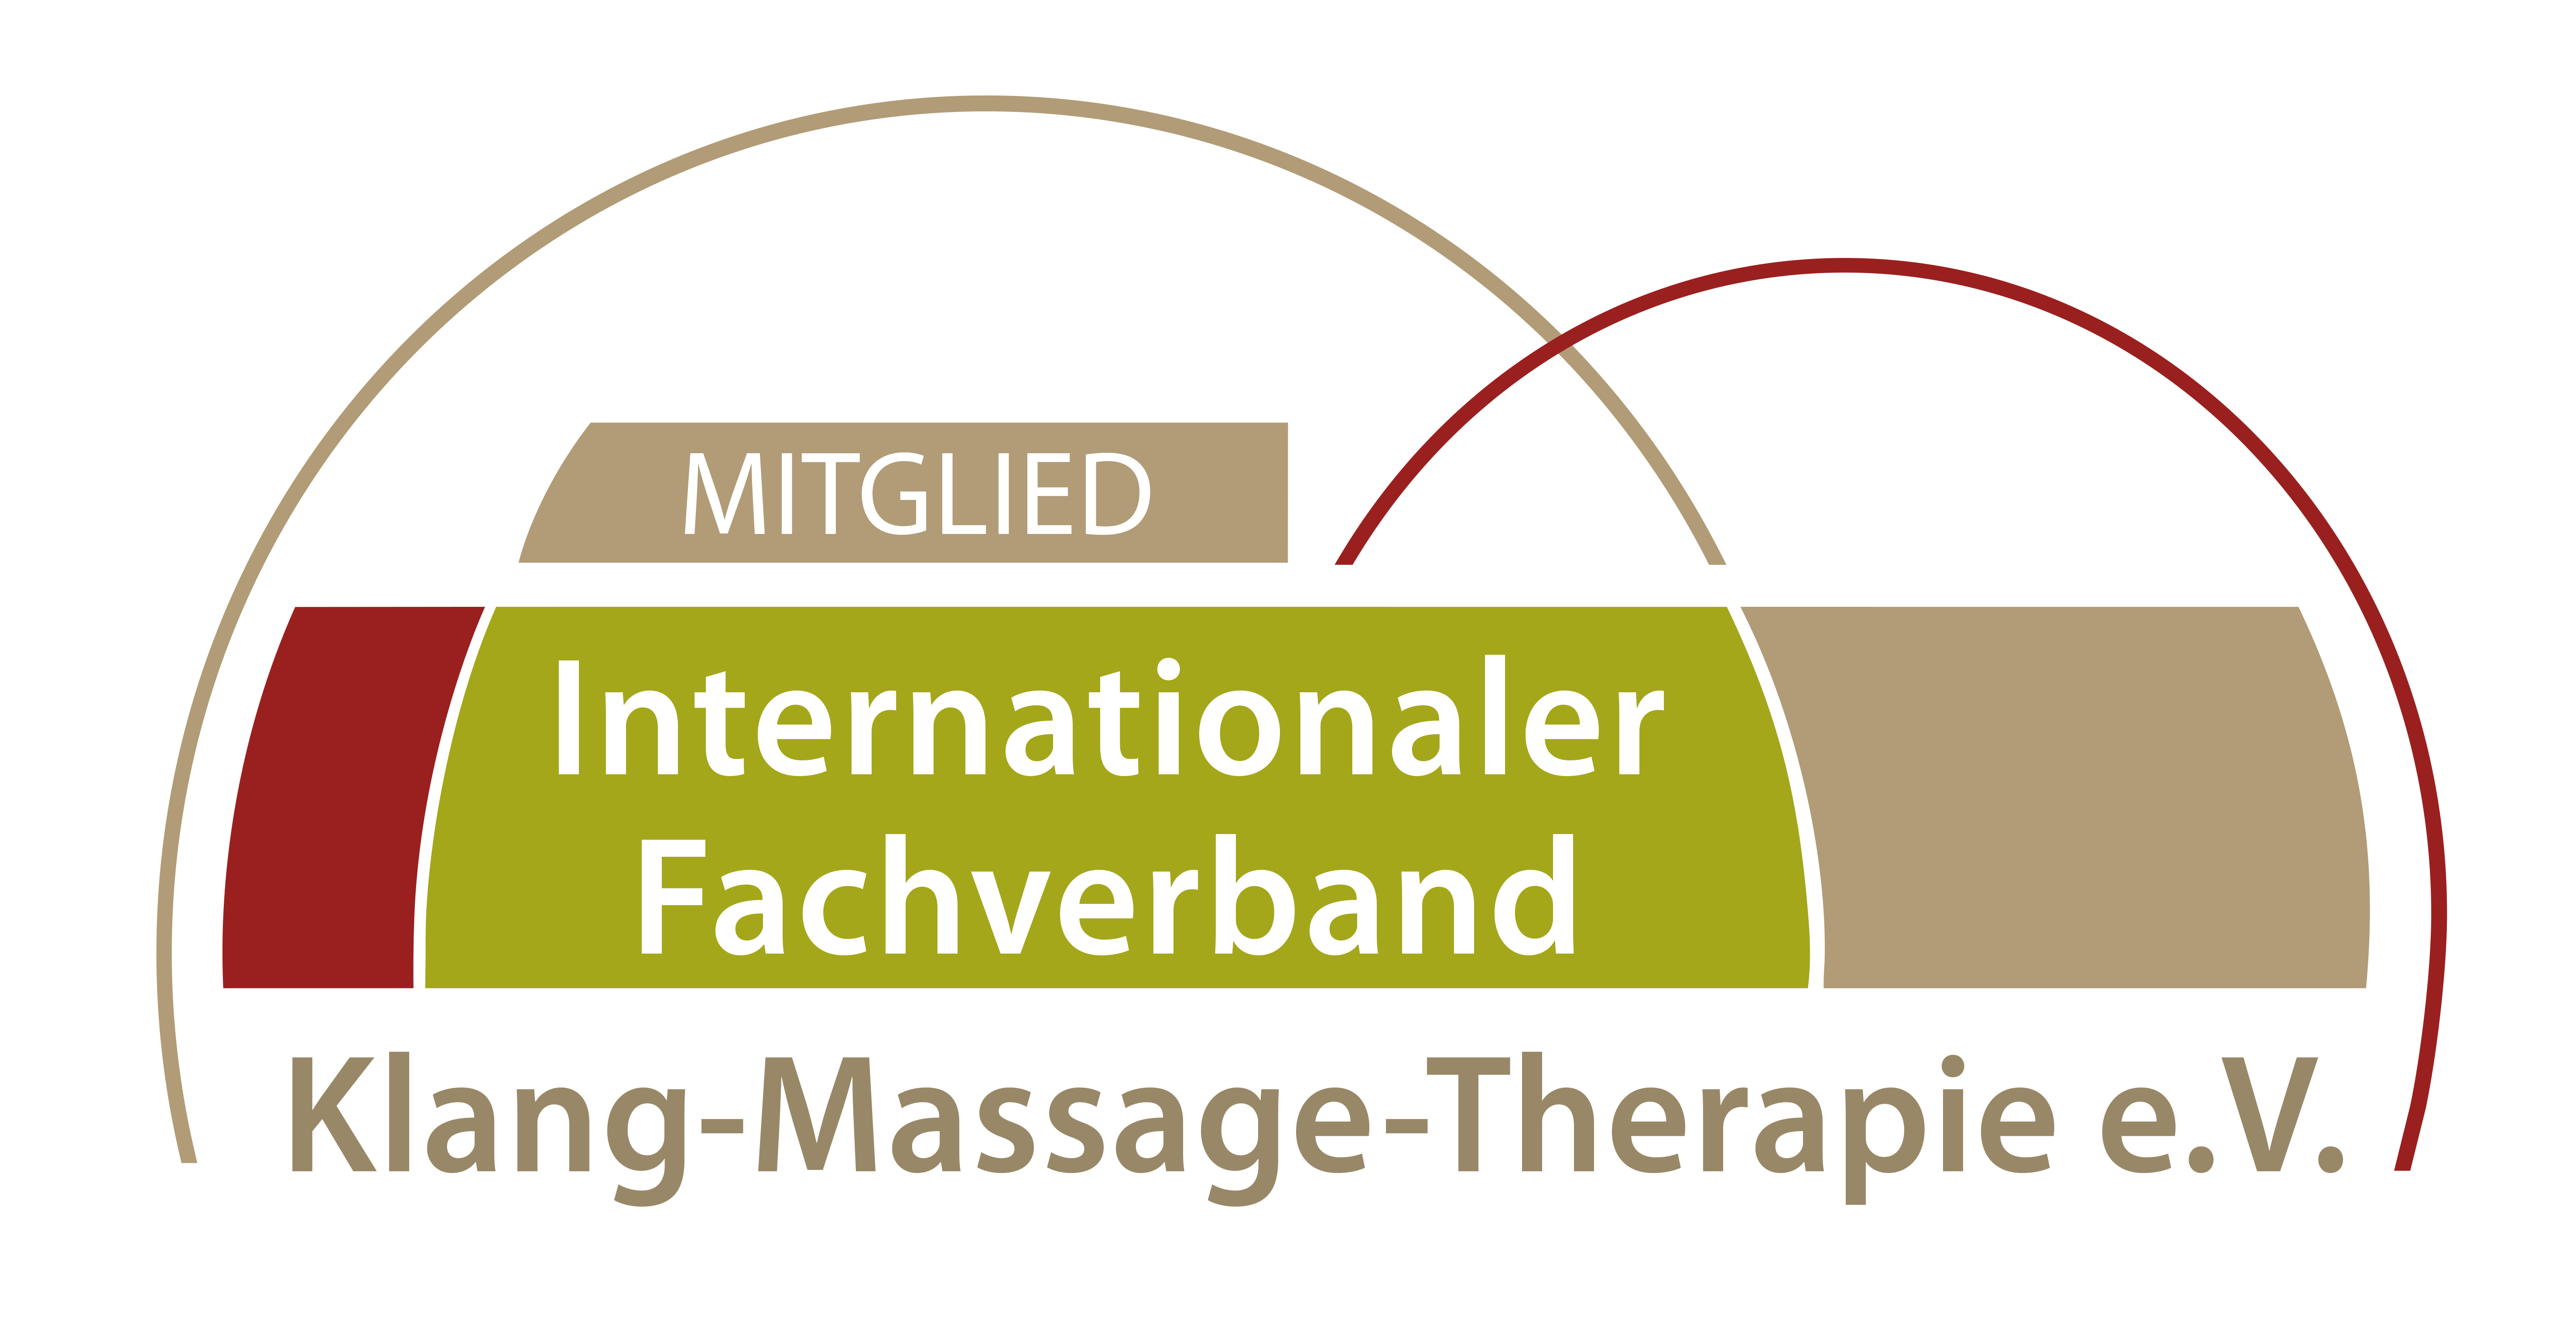 IFV_Klang-Massage-Therapie